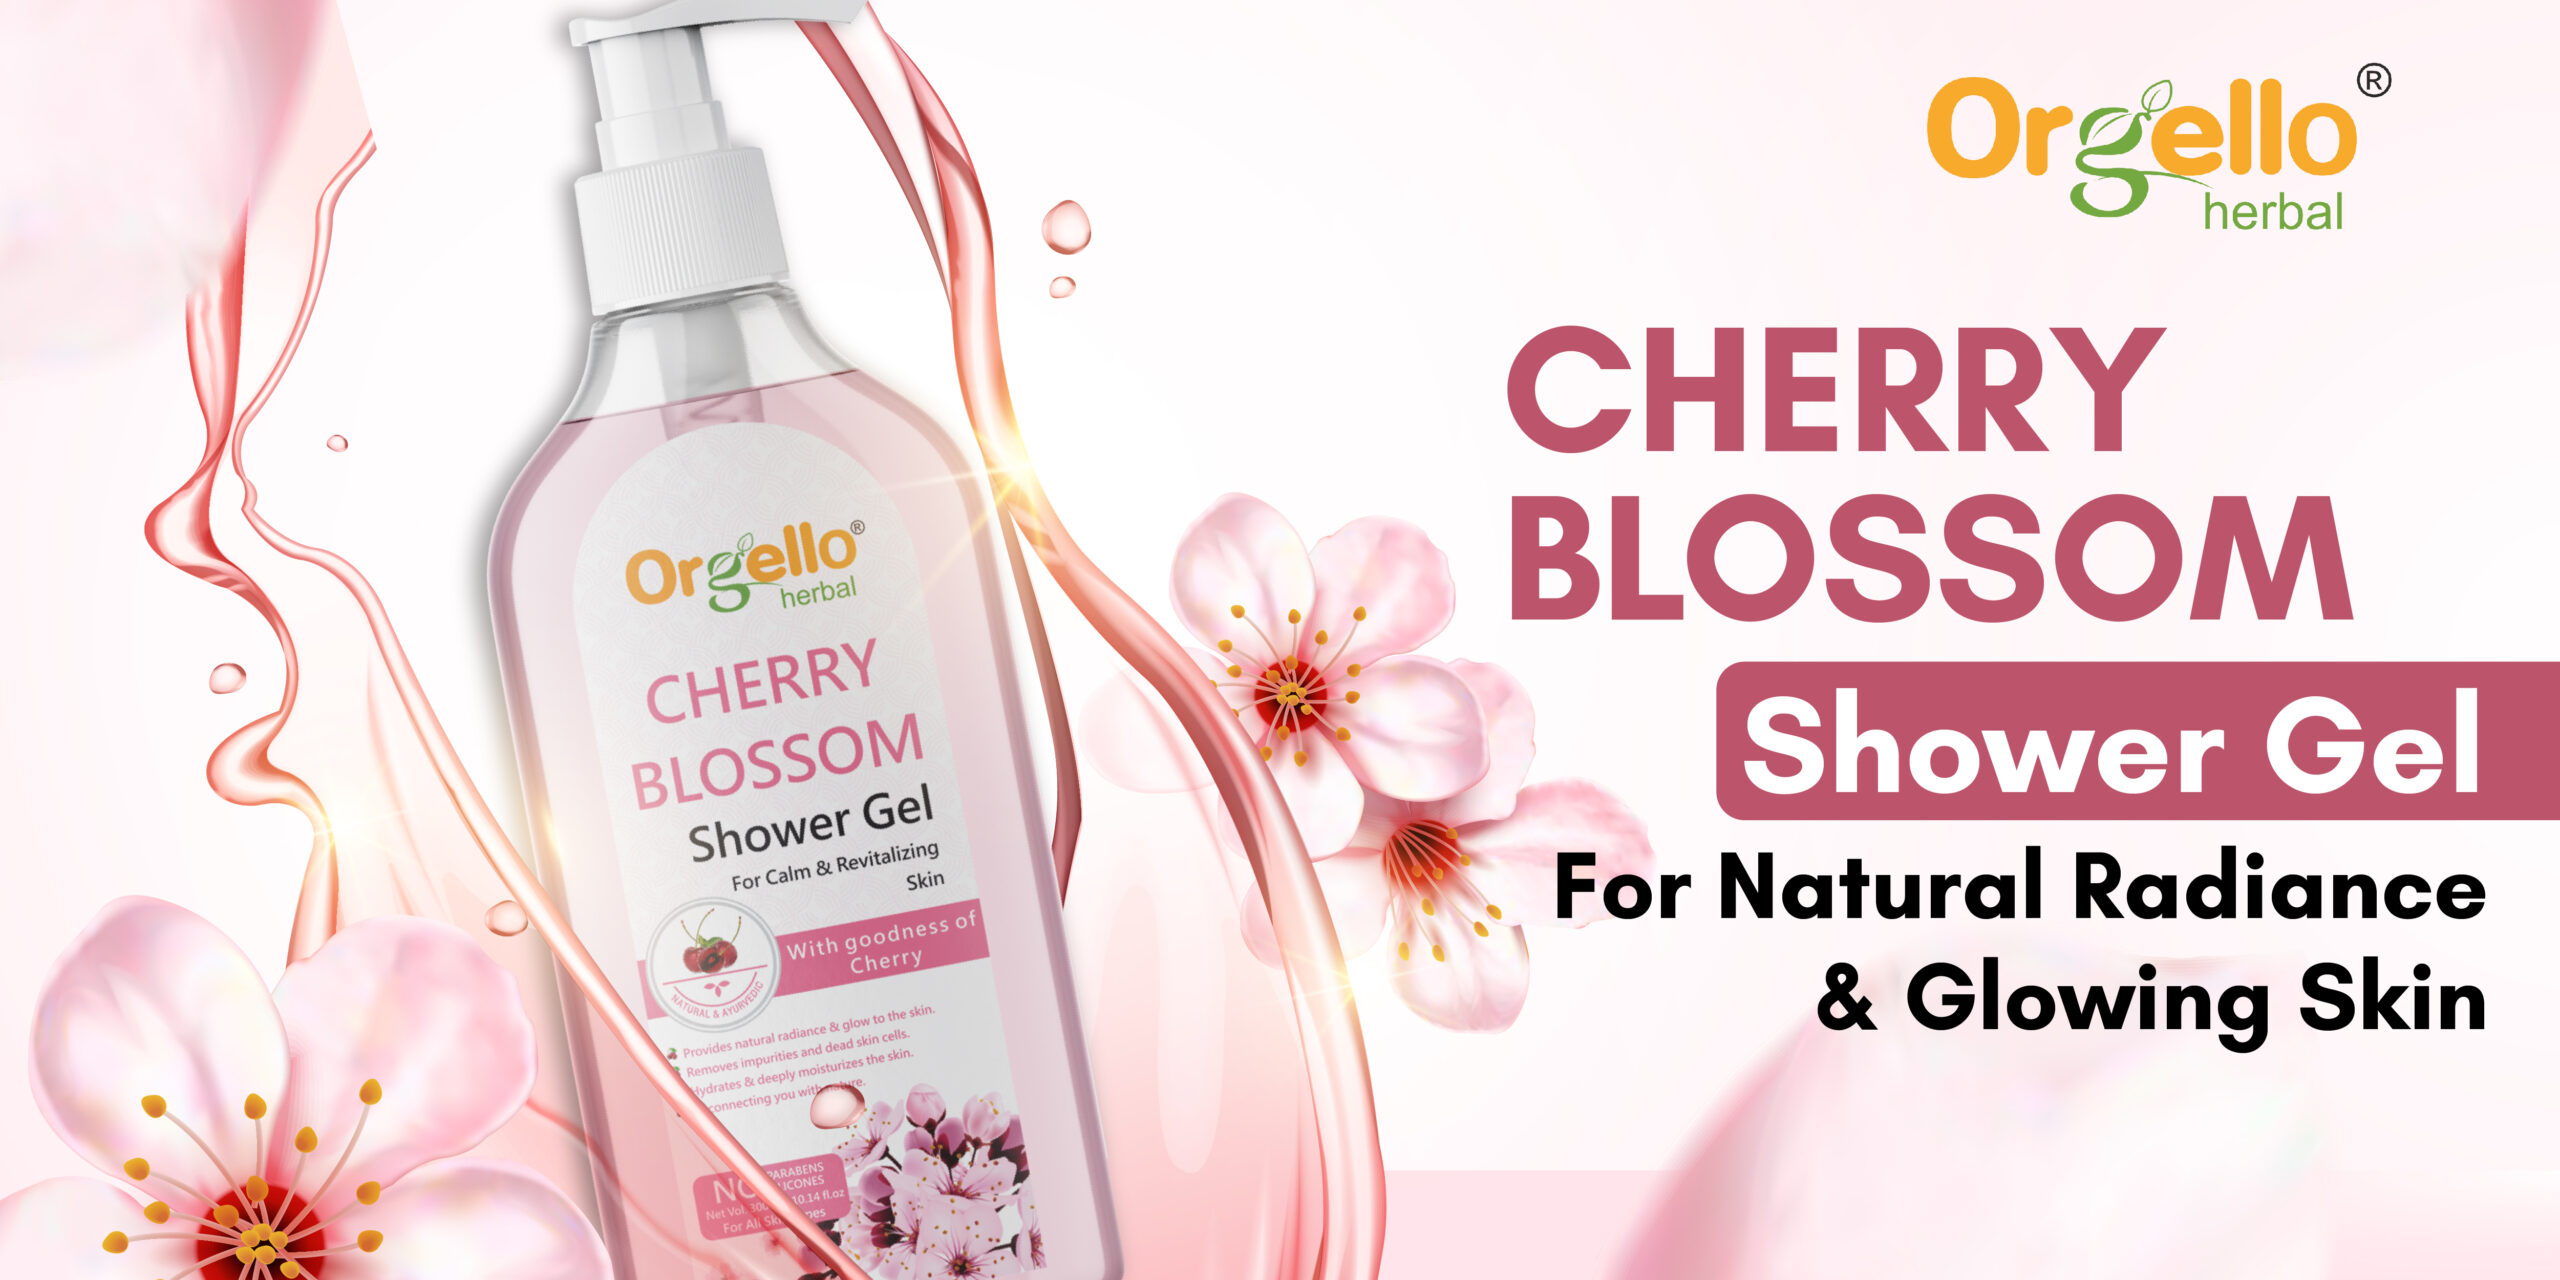 Orgello Cherry Blossom Shower Gel 1200 x 600 banner-01